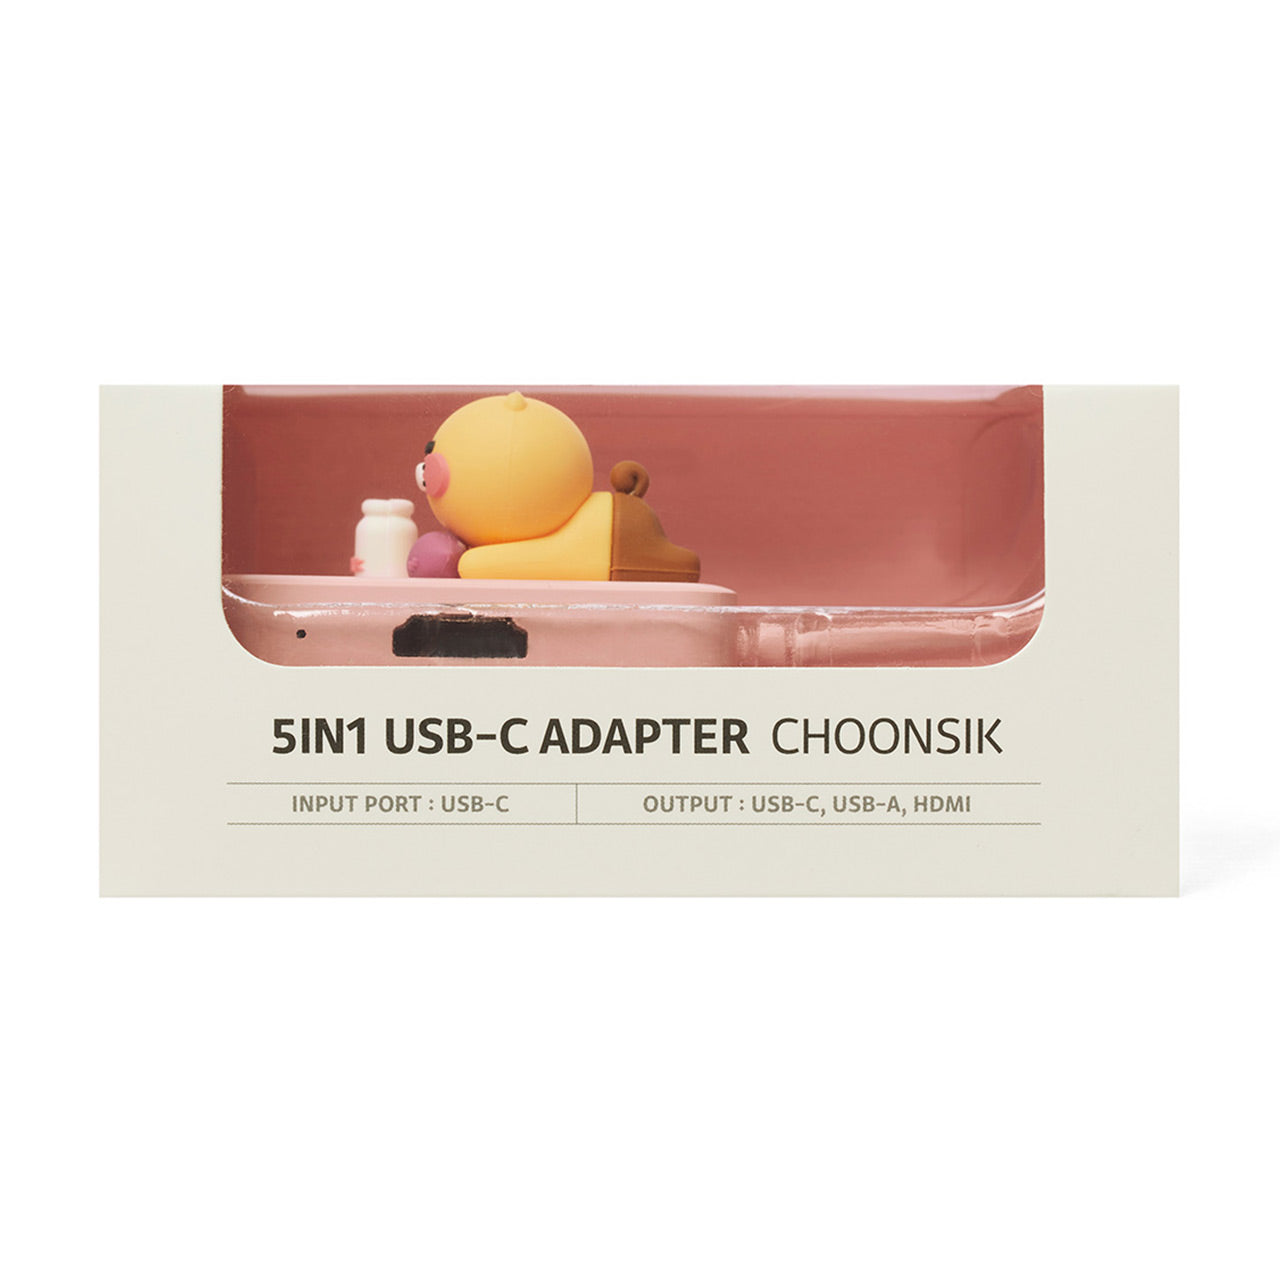 5in1 USB-C Adapter-Choonsik